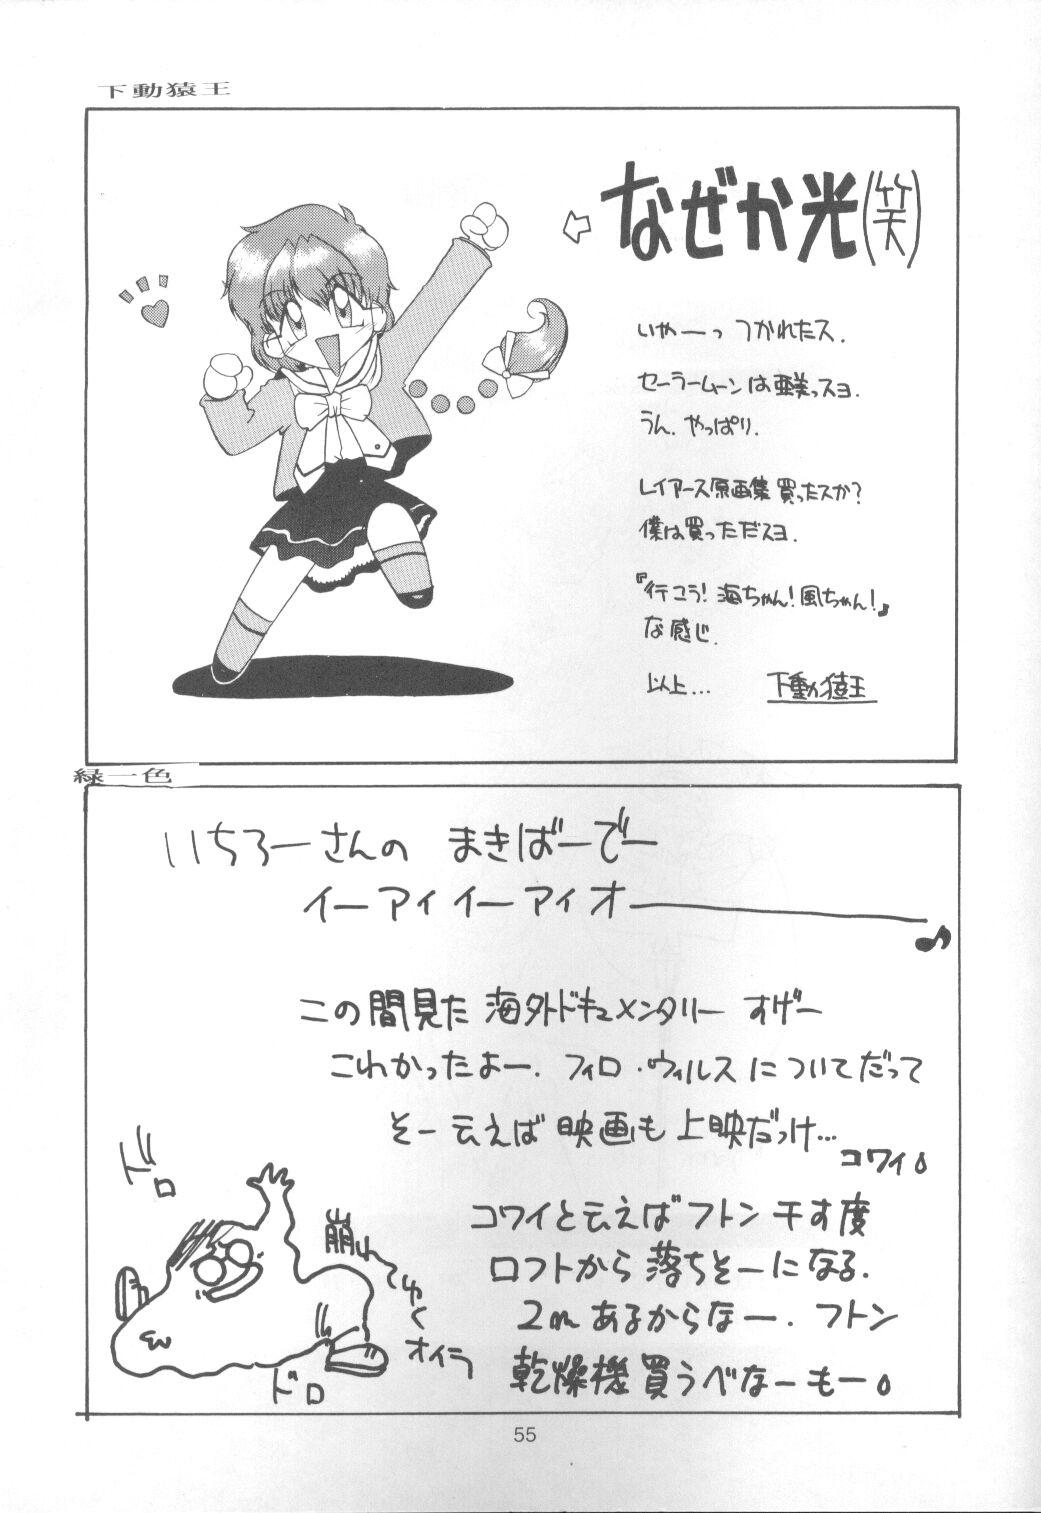 Tanned Tabeta Kigasuru 9 - Sailor moon Older - Page 54